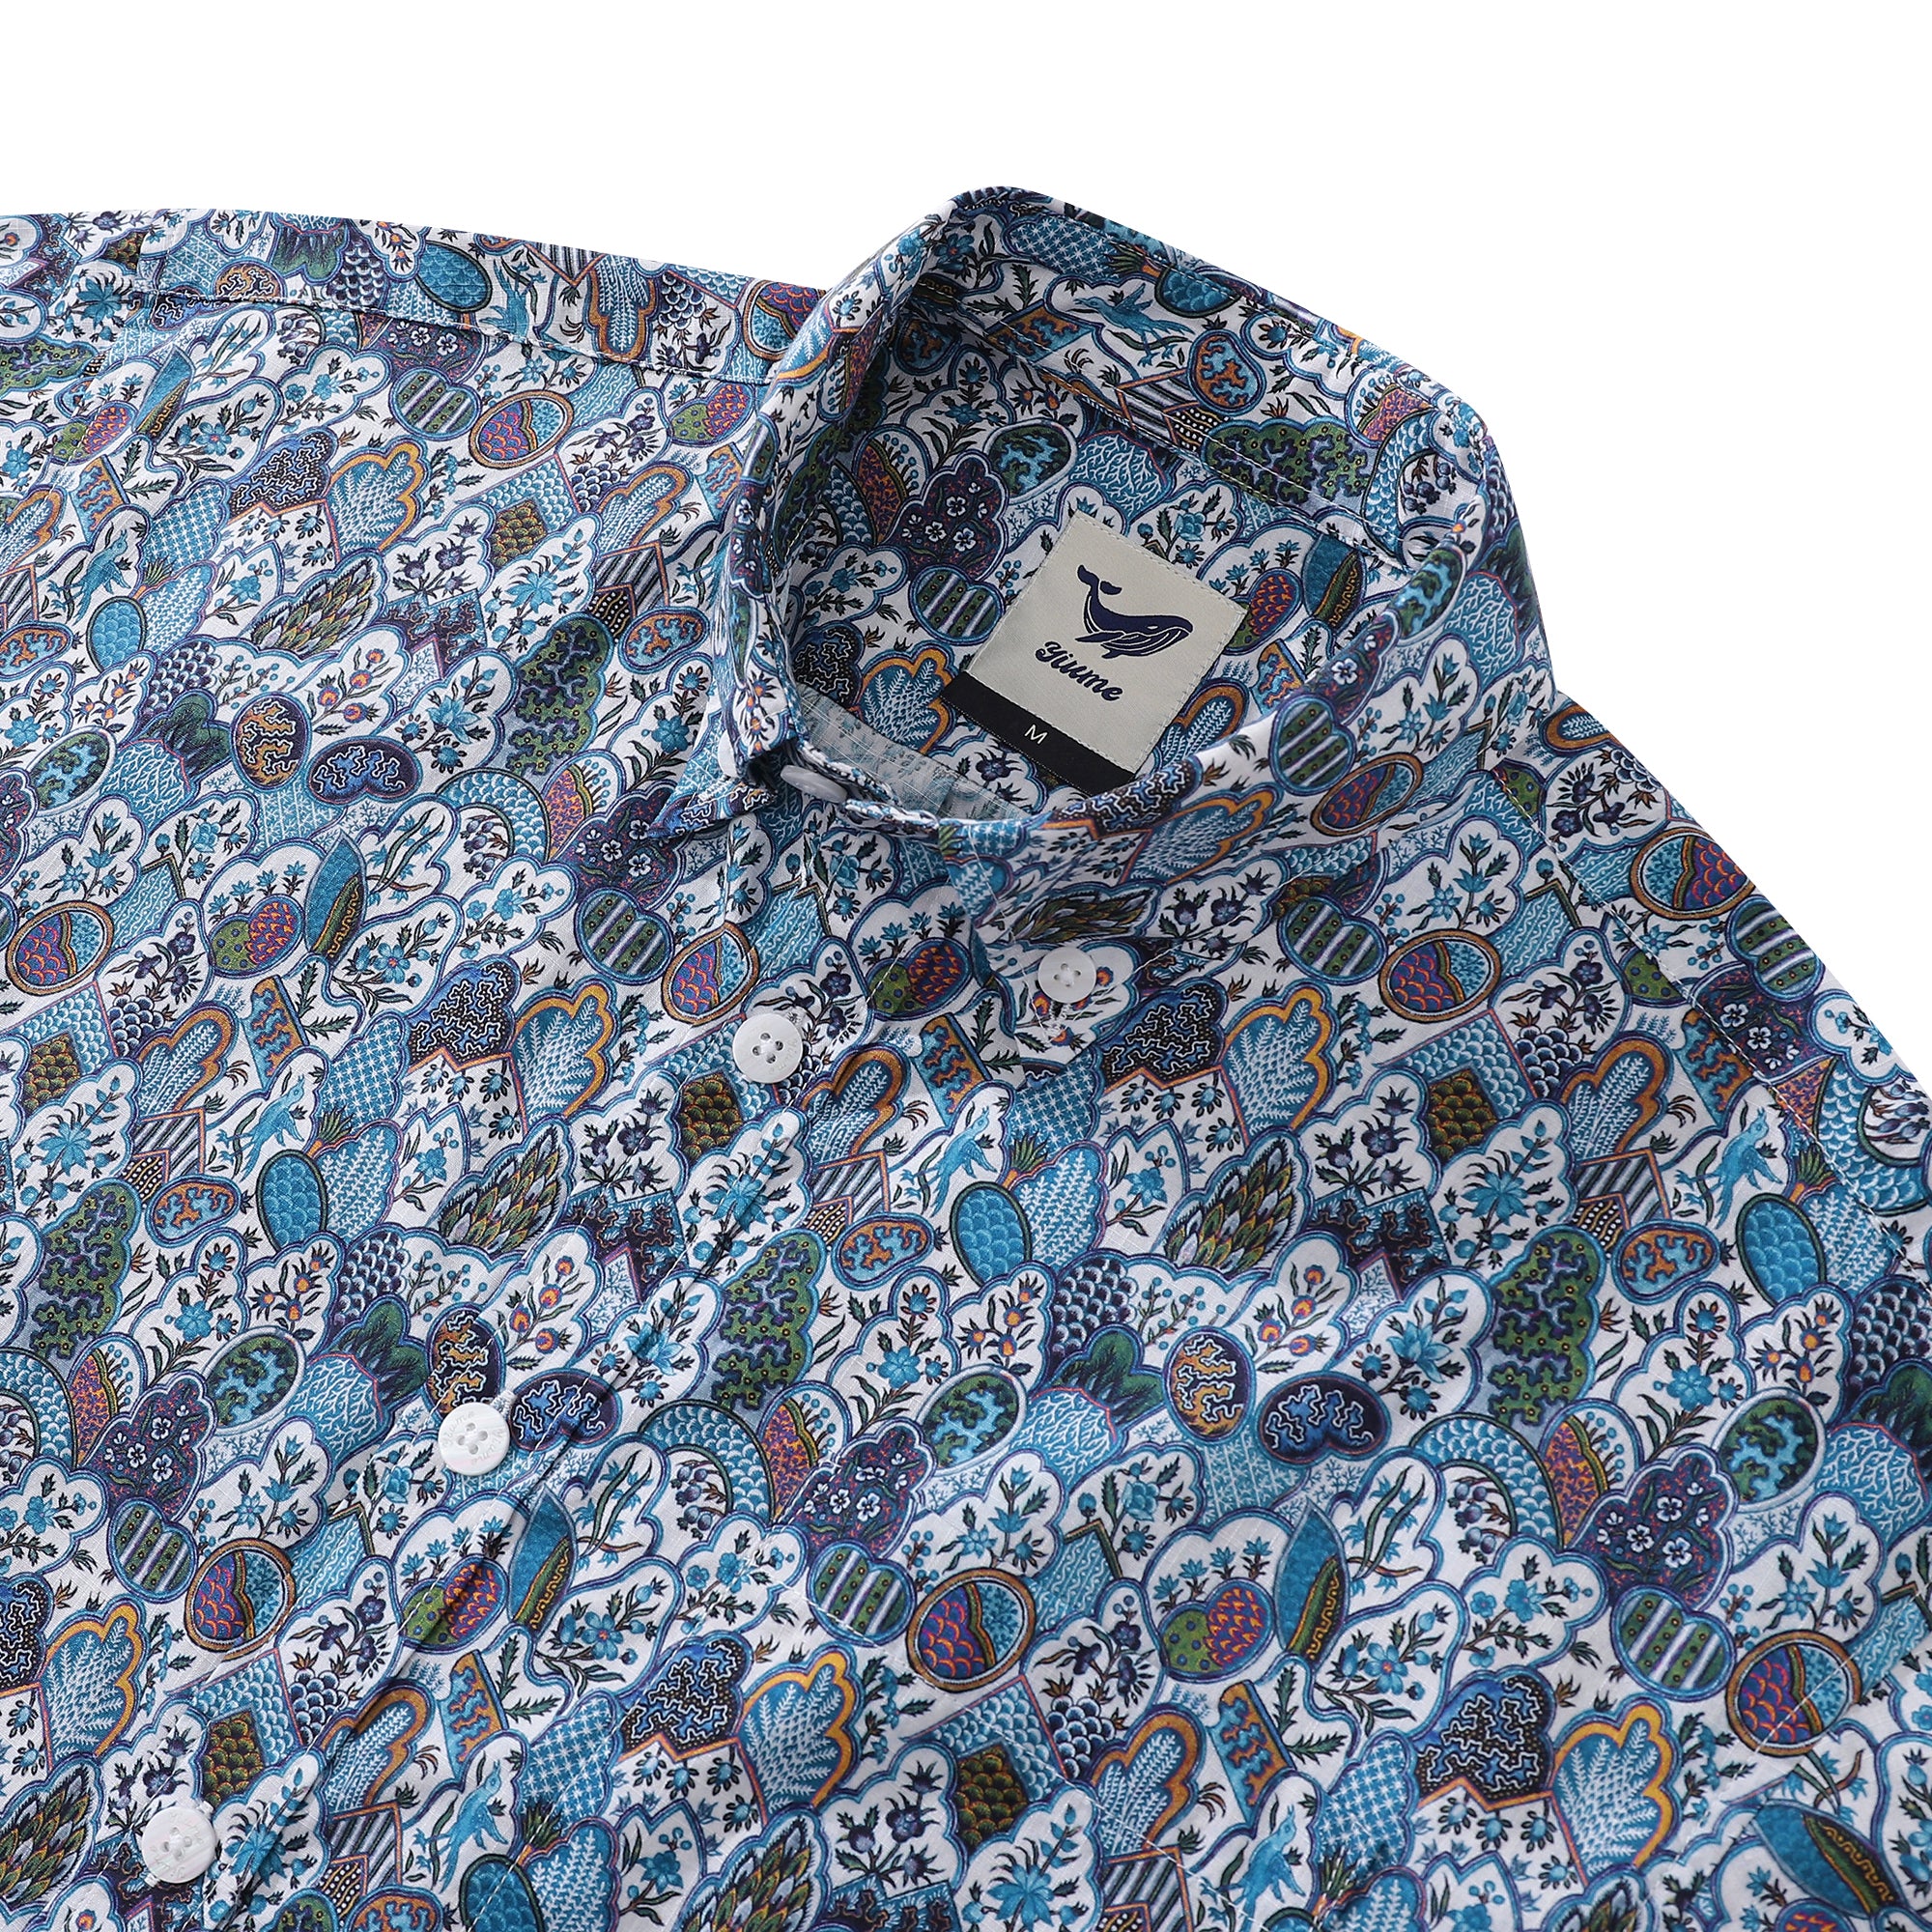 Men's Hawaiian Shirt Vintage Floral Print Cotton Button-down Short Sle ...